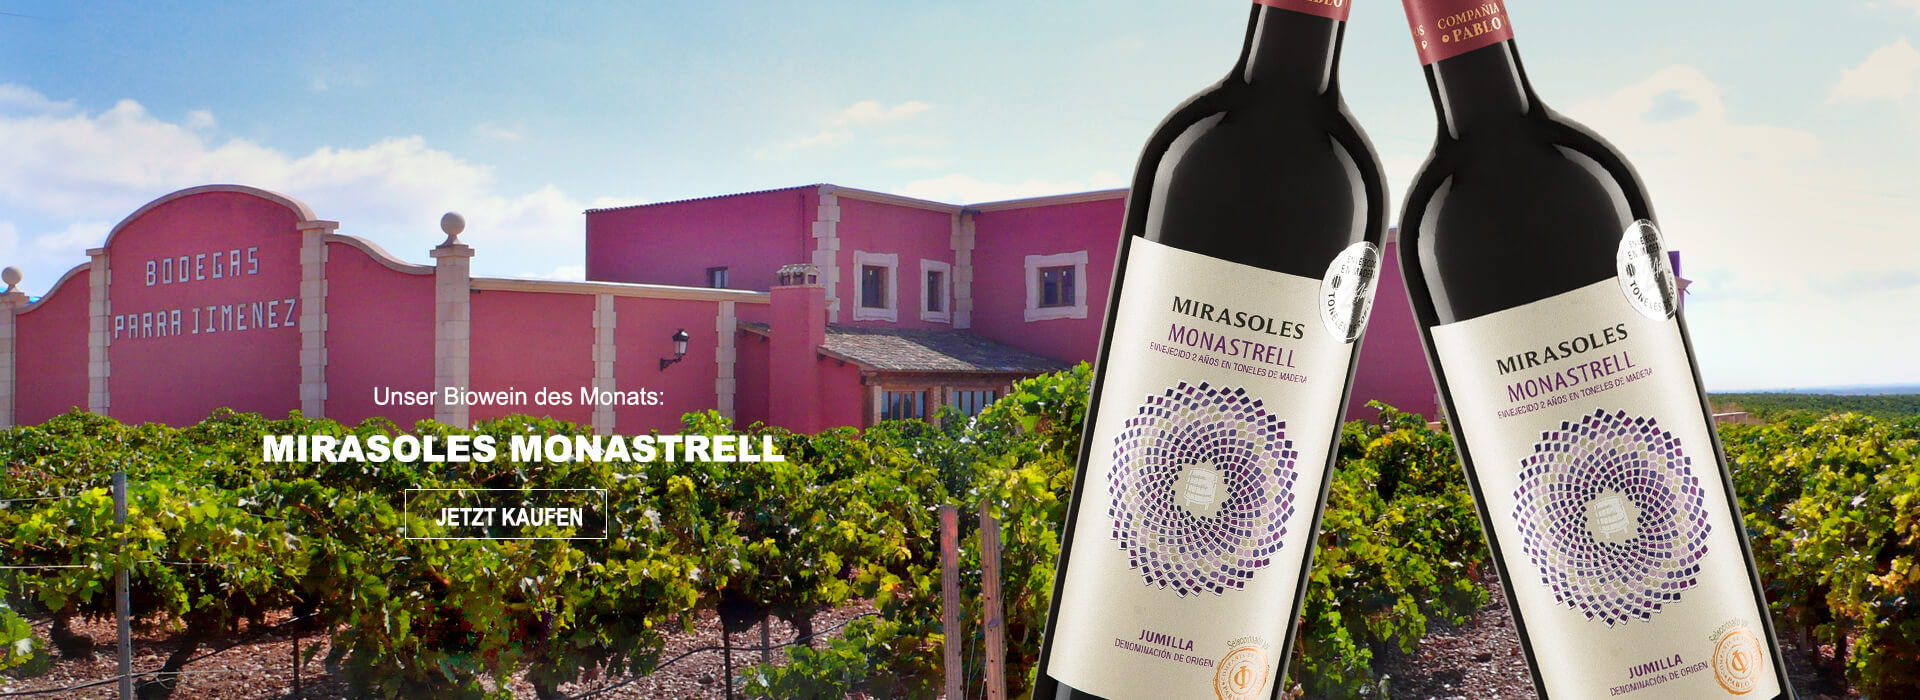 Unser Wein des Monats: Mirasoles Madera Parra